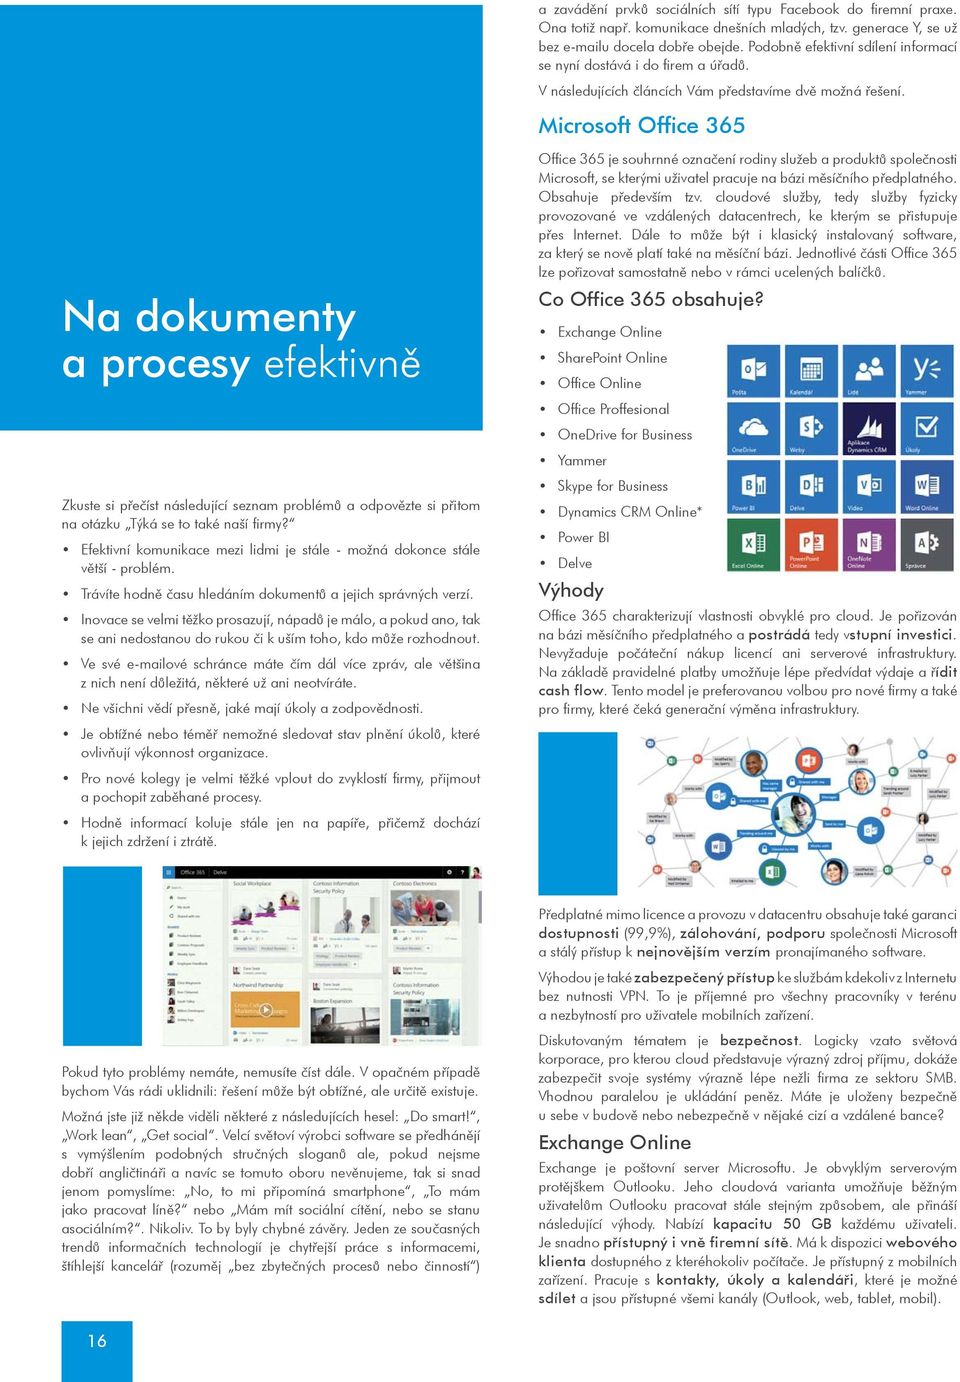 Microsoft Office 365 Na dokumenty a procesy efektivnì Zkuste si pøeèíst následující seznam problémù a odpovìzte si pøitom na otázku Týká se to také naší firmy?